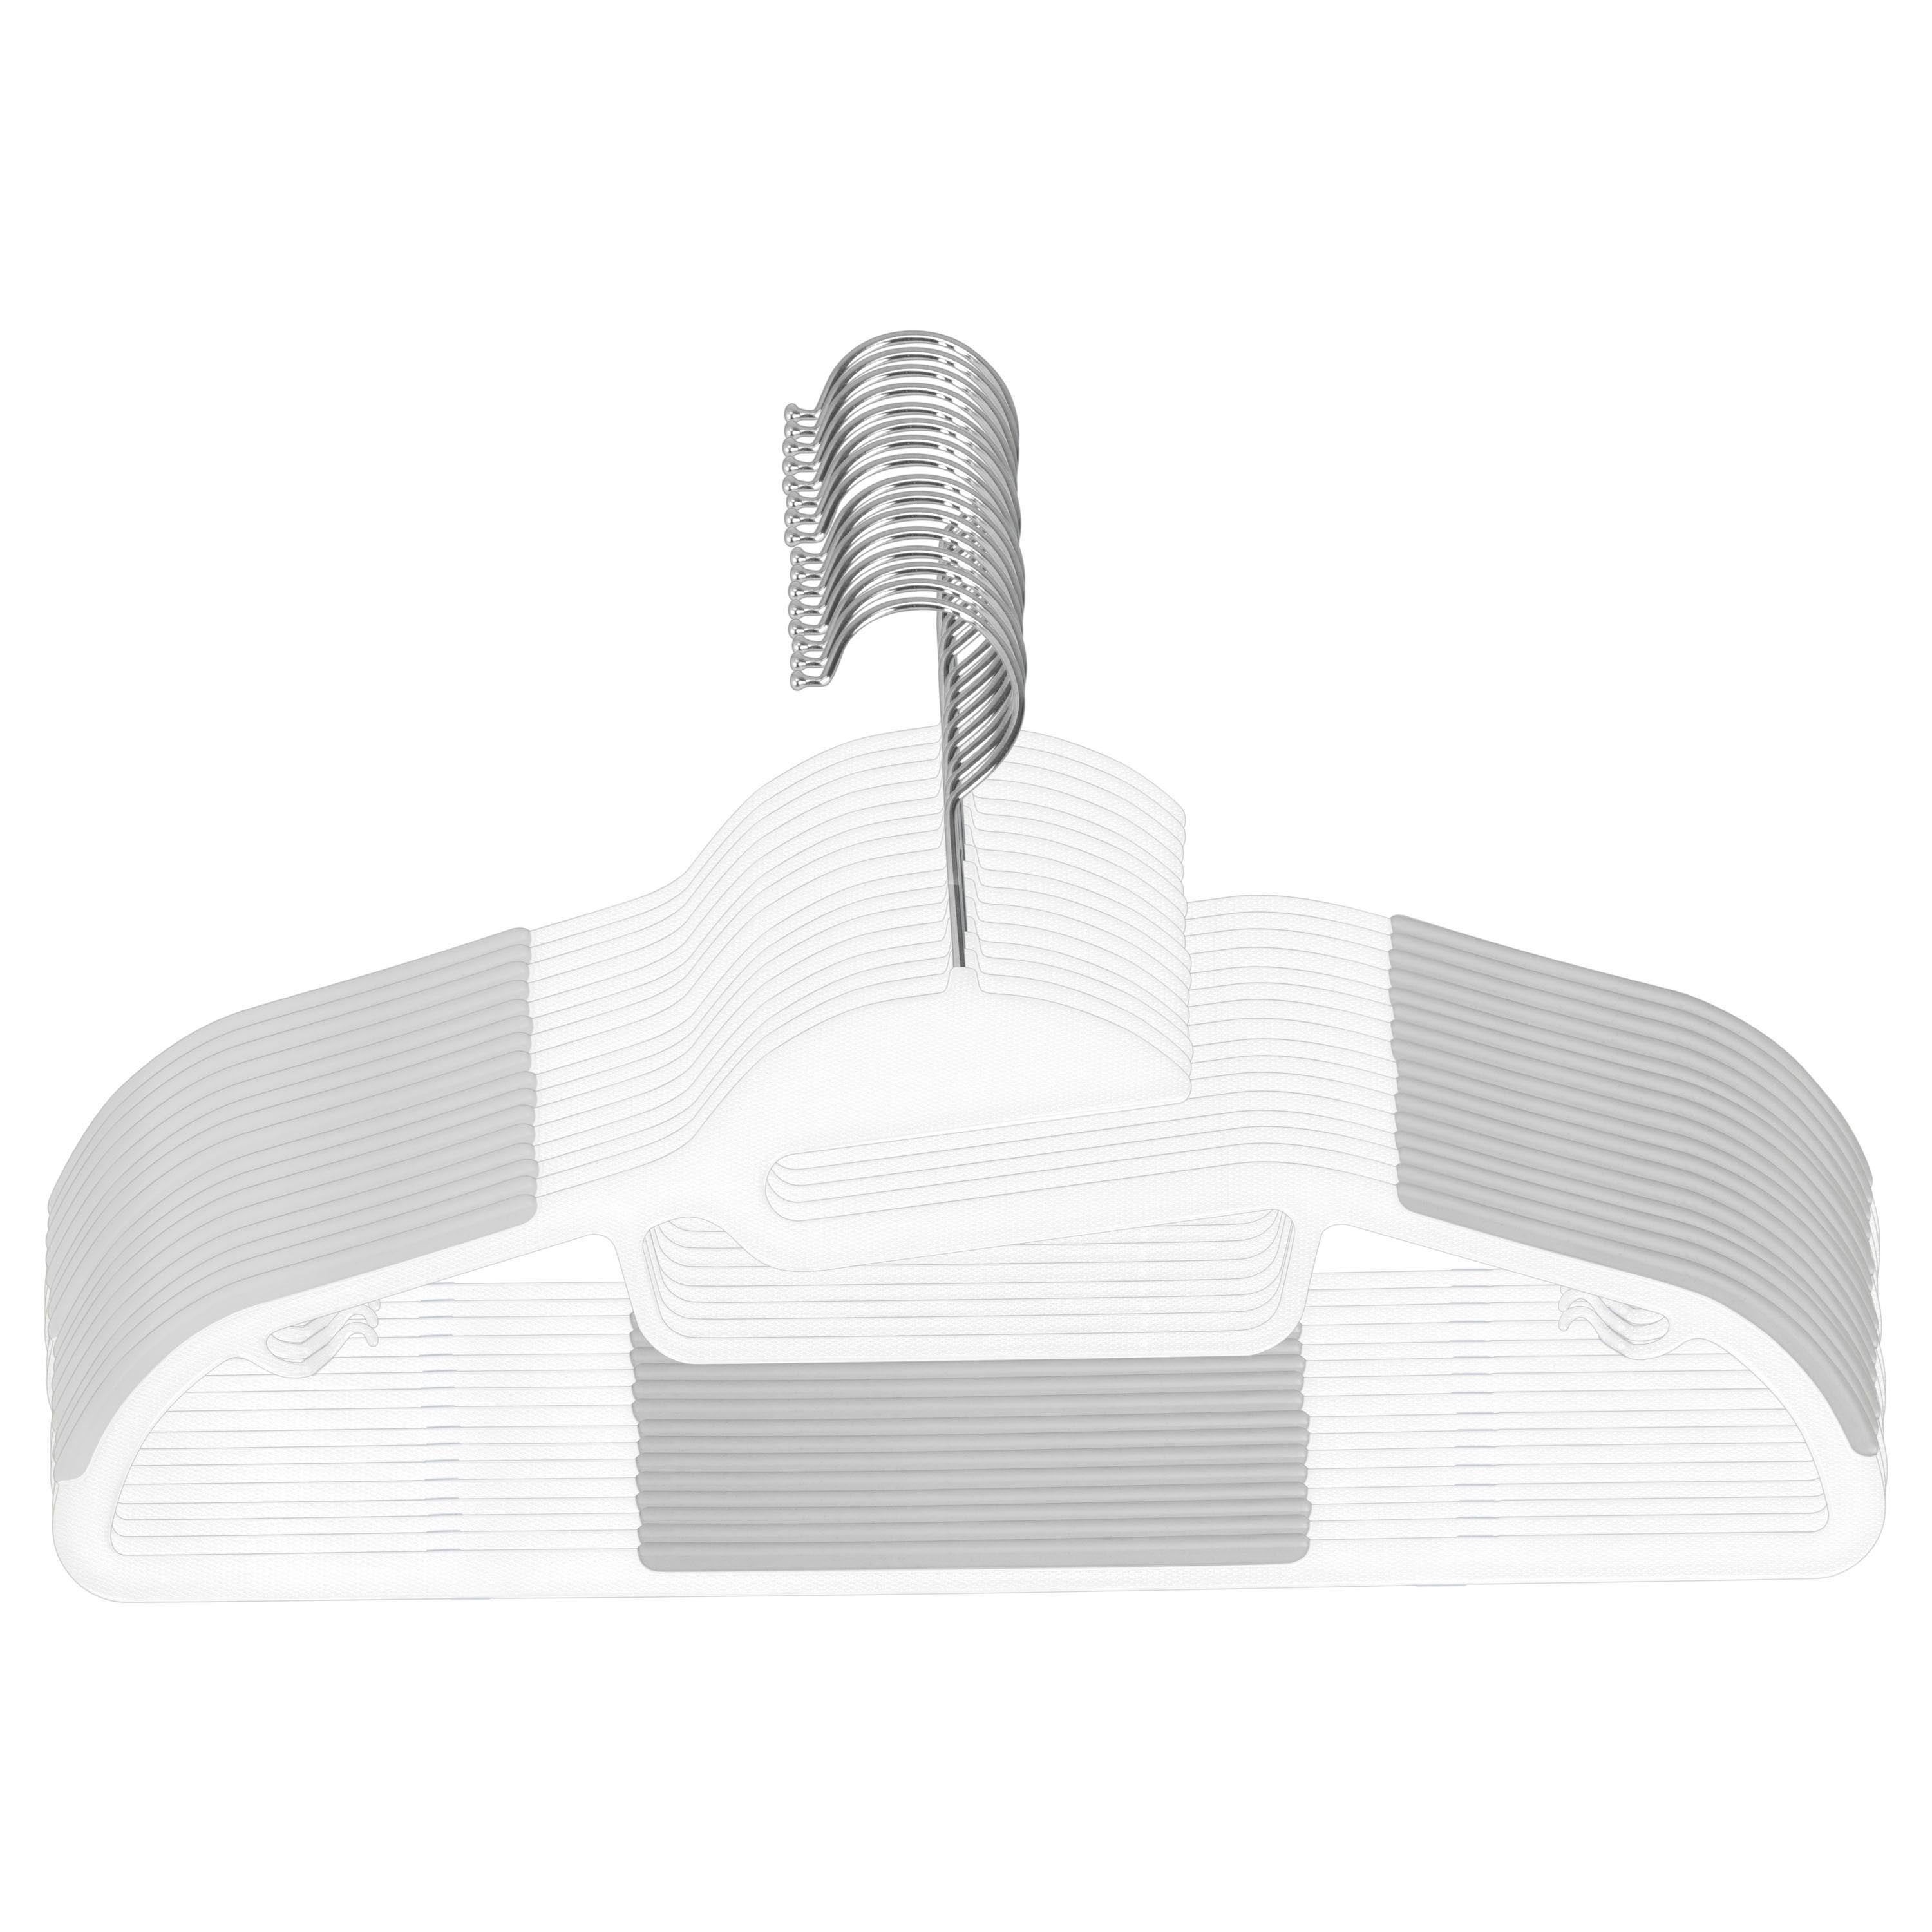 Kitcheniva Plastic Hangers Durable Slim Pack of 30 White, Pack of 30 -  Gerbes Super Markets